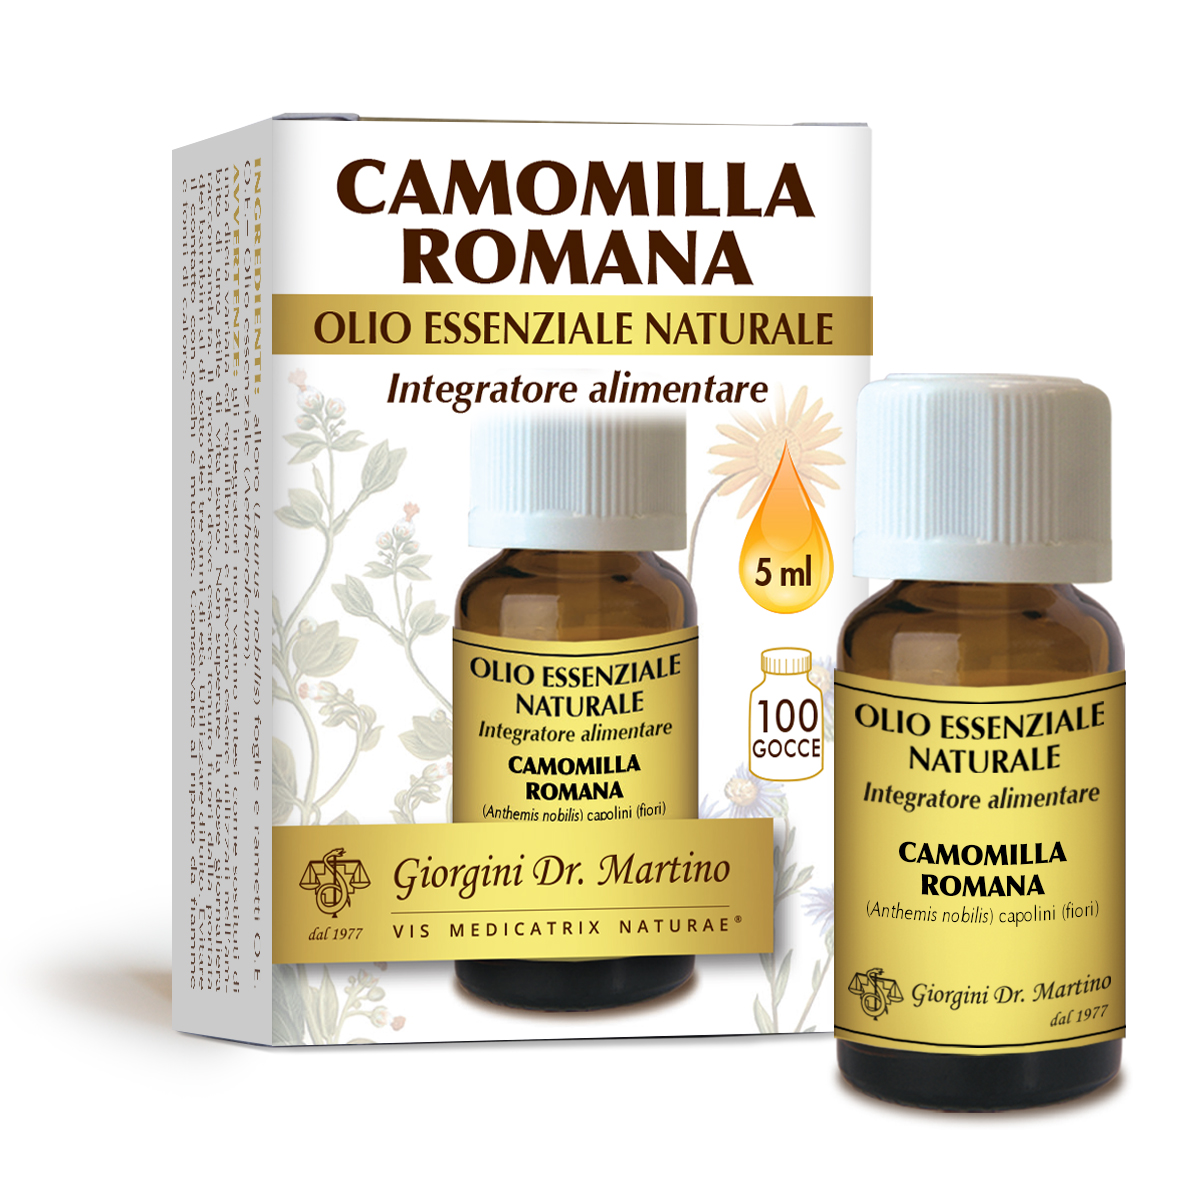 CAMOMILLA ROMANA olio essenziale naturale 5 ml